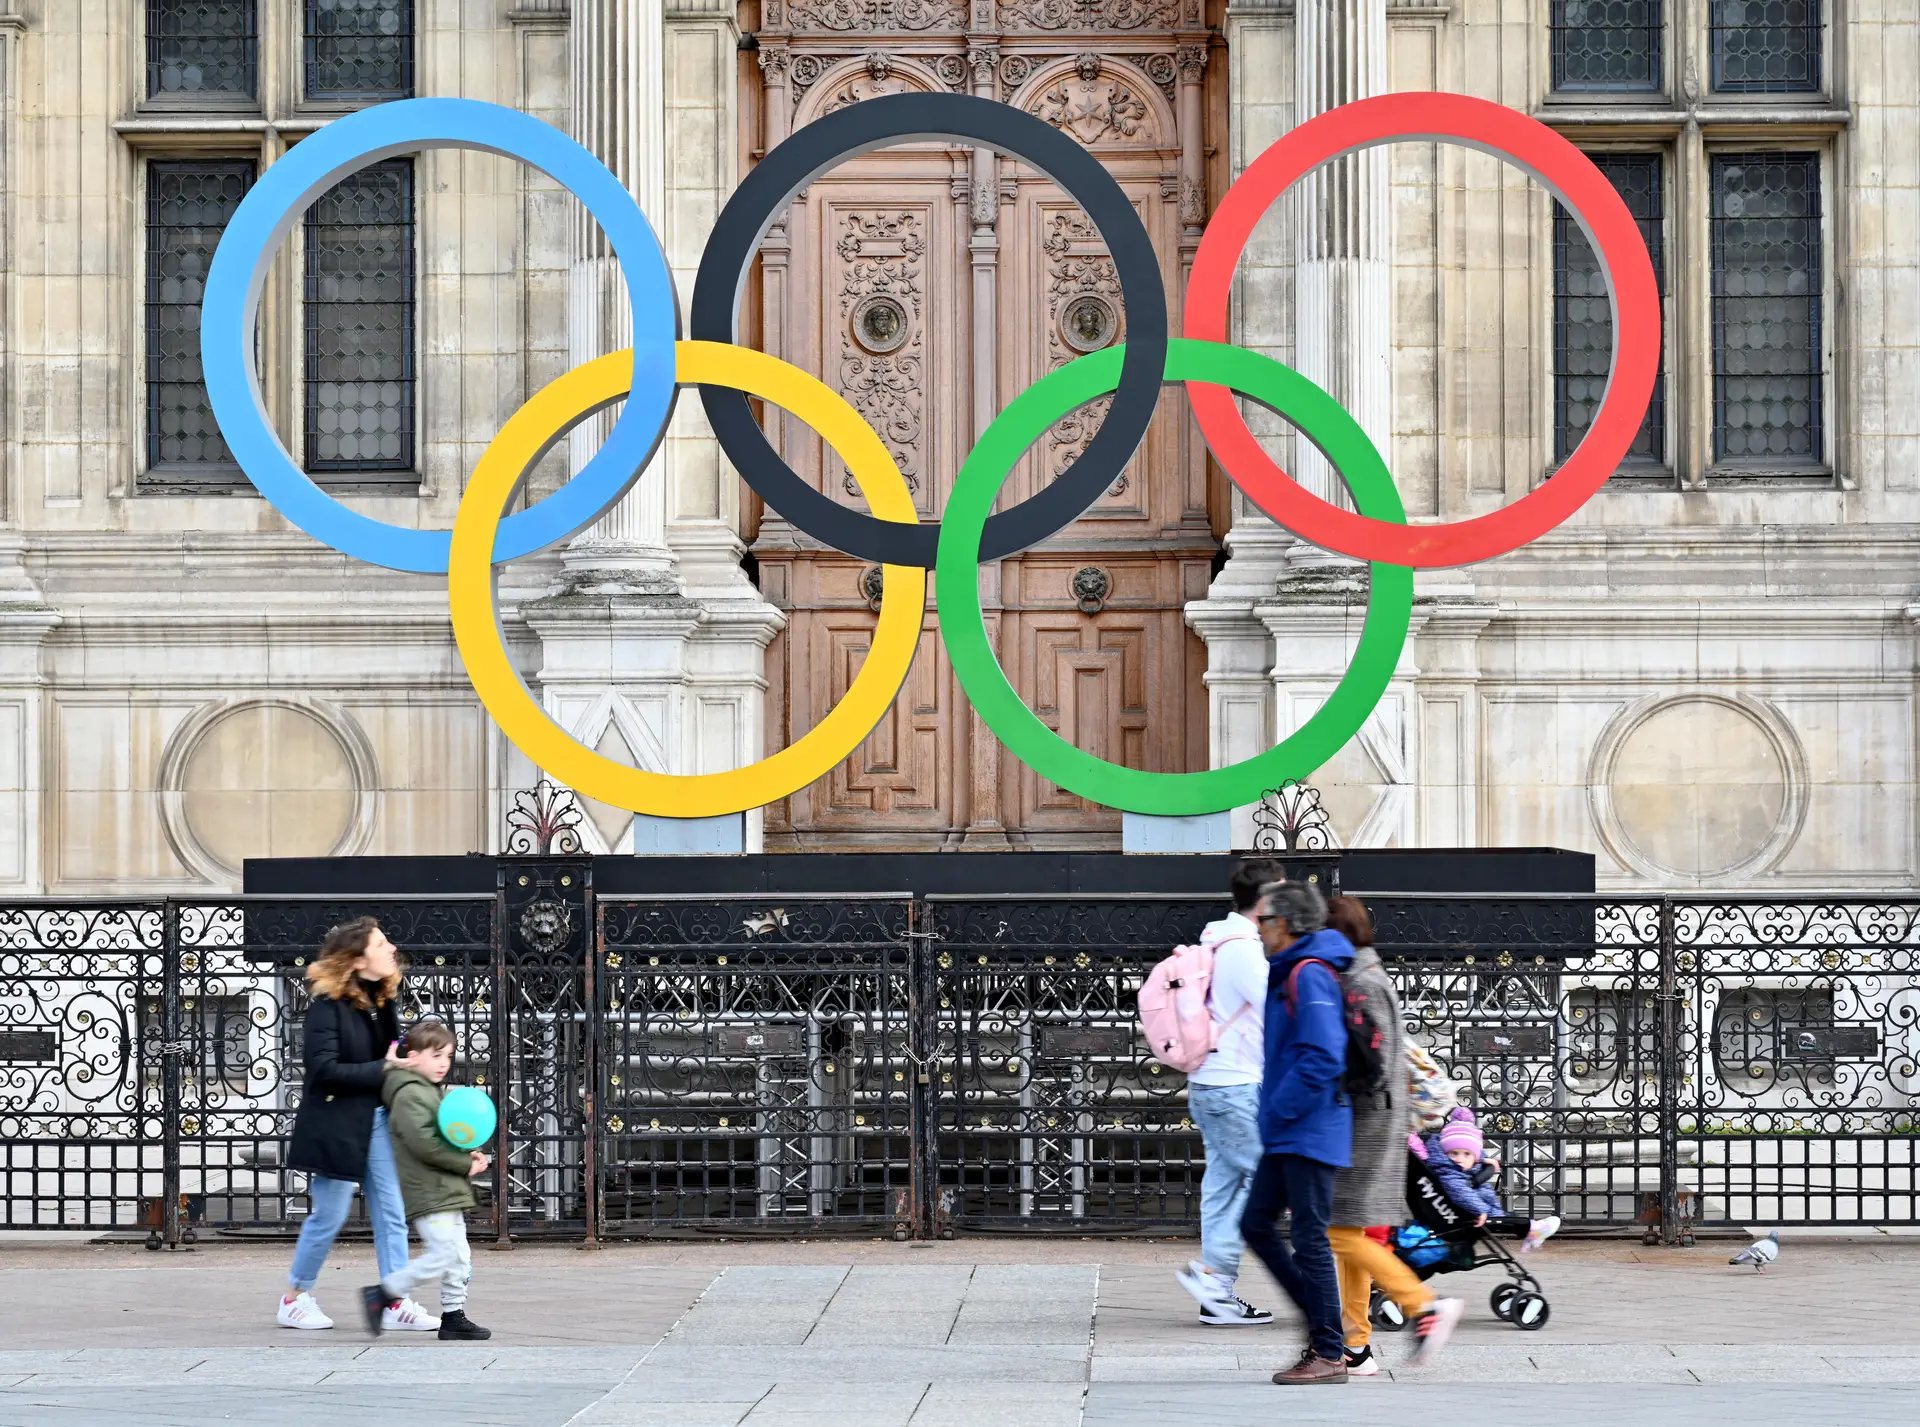 Atletas russos recorrem à CAS para poderem participar dos Jogos Olímpicos